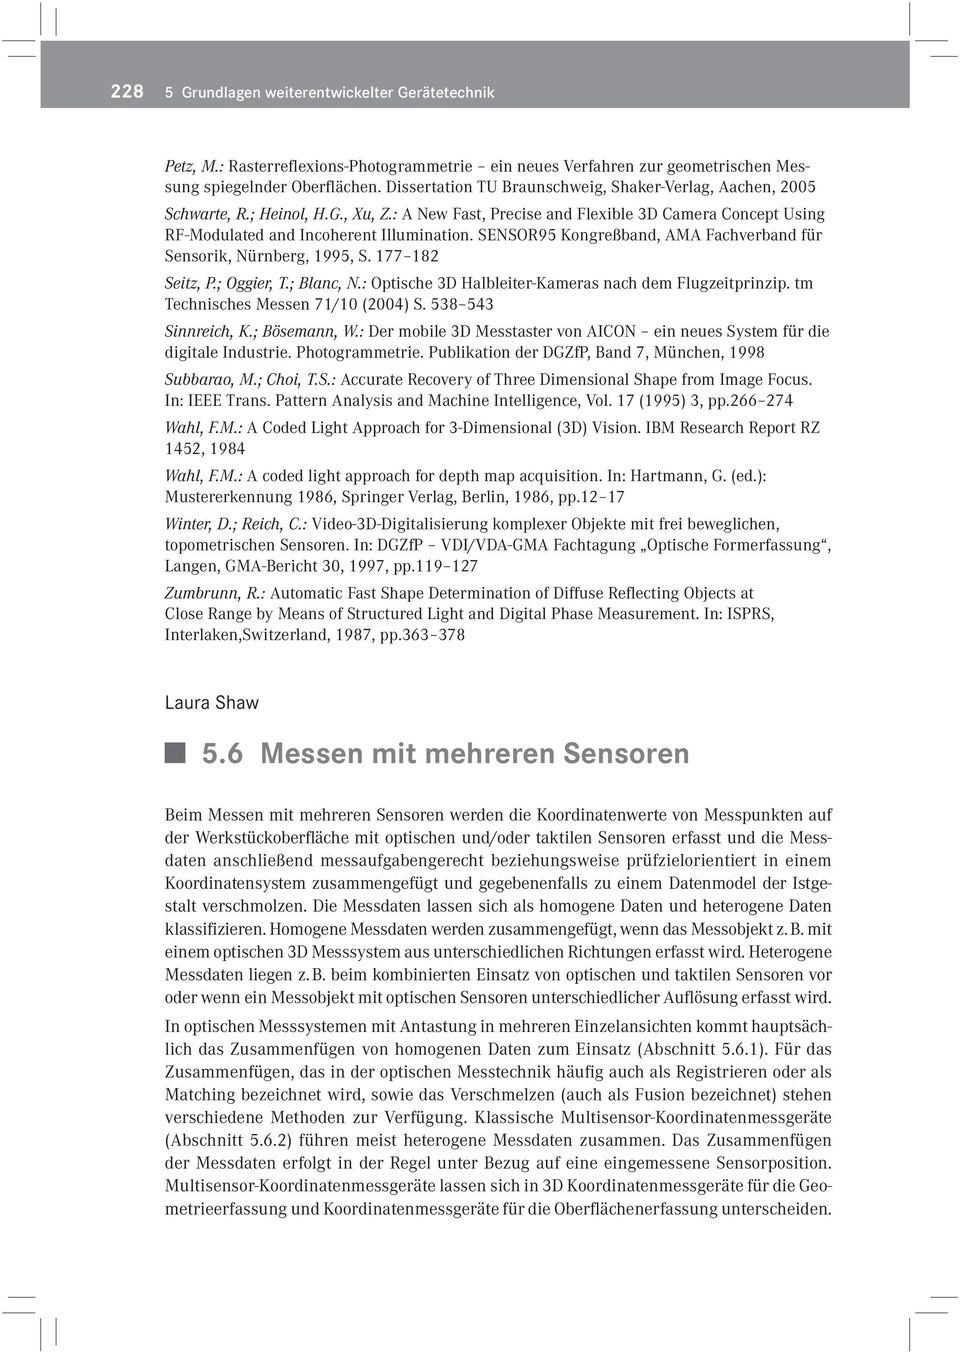 SENSOR95 Kongreßband, AMA Fachverband für Sensorik, Nürnberg, 1995, S. 177 182 Seit z, P.; Oggier, T.; Blanc, N.: Optische 3D Halbleiter-Kameras nach dem Flugzeitprinzip.